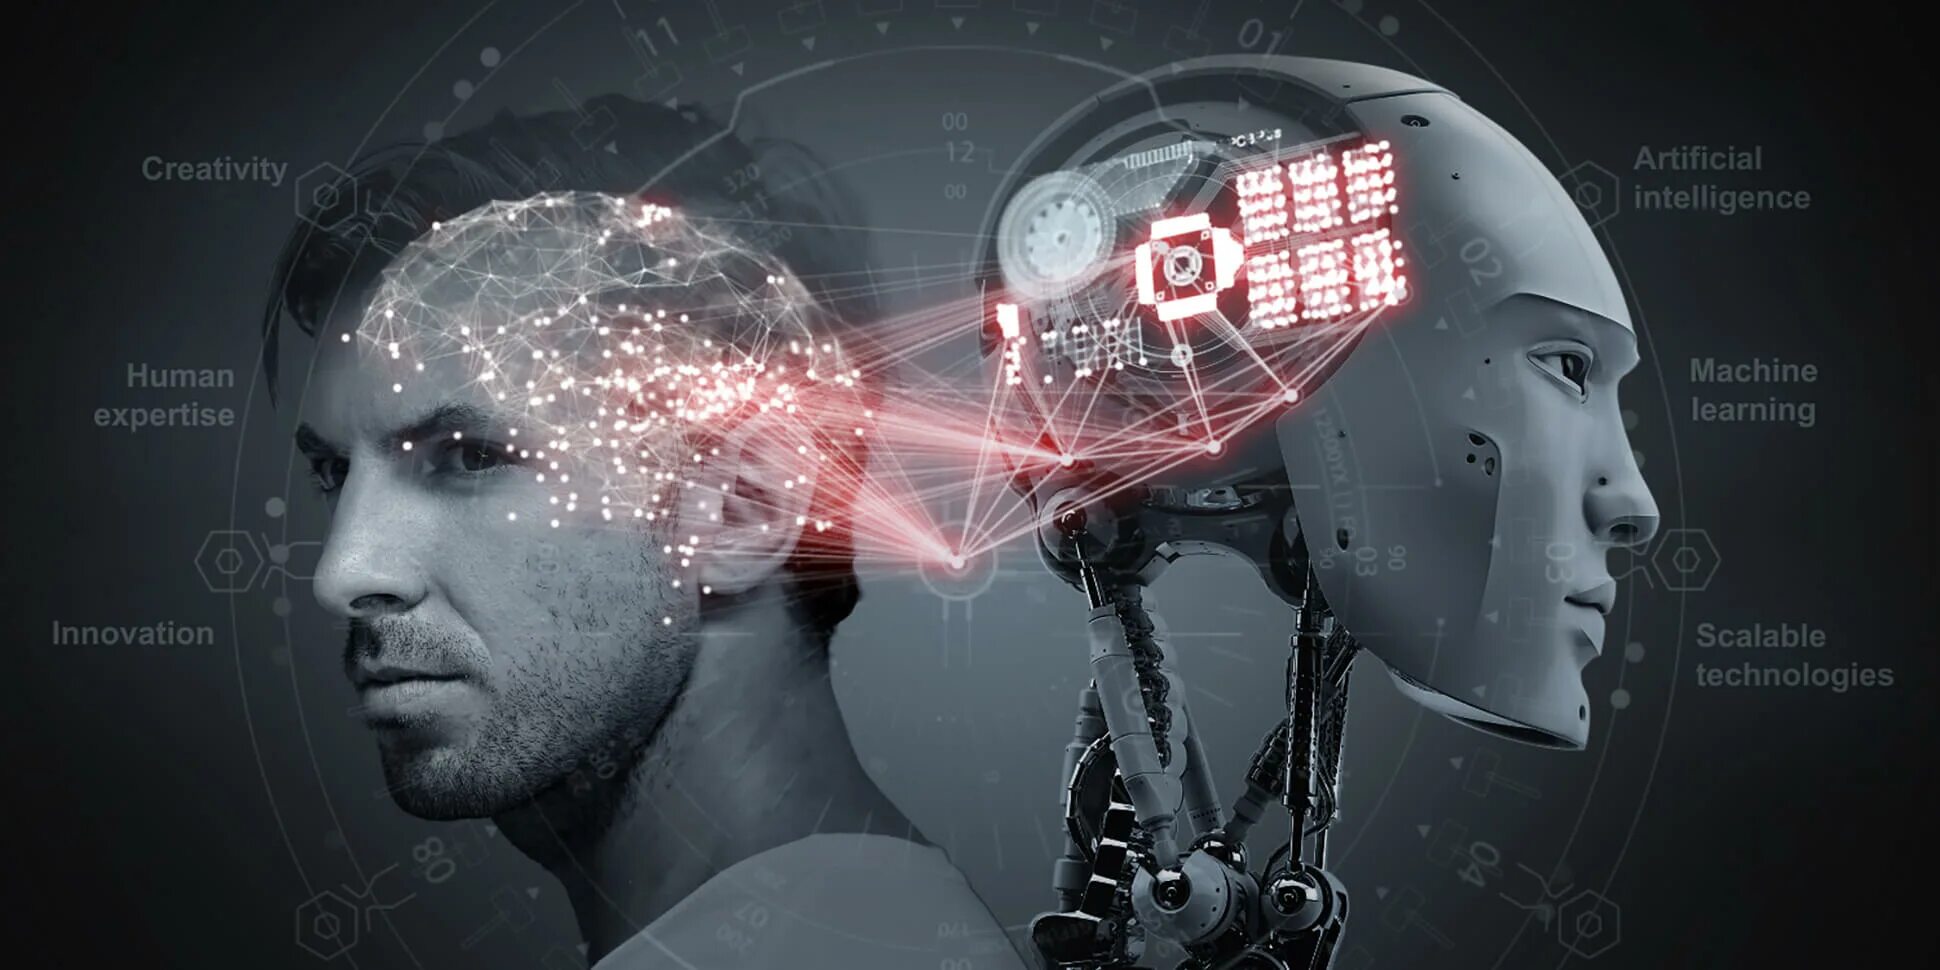 ИСКУСТВЕННЫЙИ нтеллект. Искусственный интеллект и человек. ИИ искусственный интеллект. Обучение искусственного интеллекта.